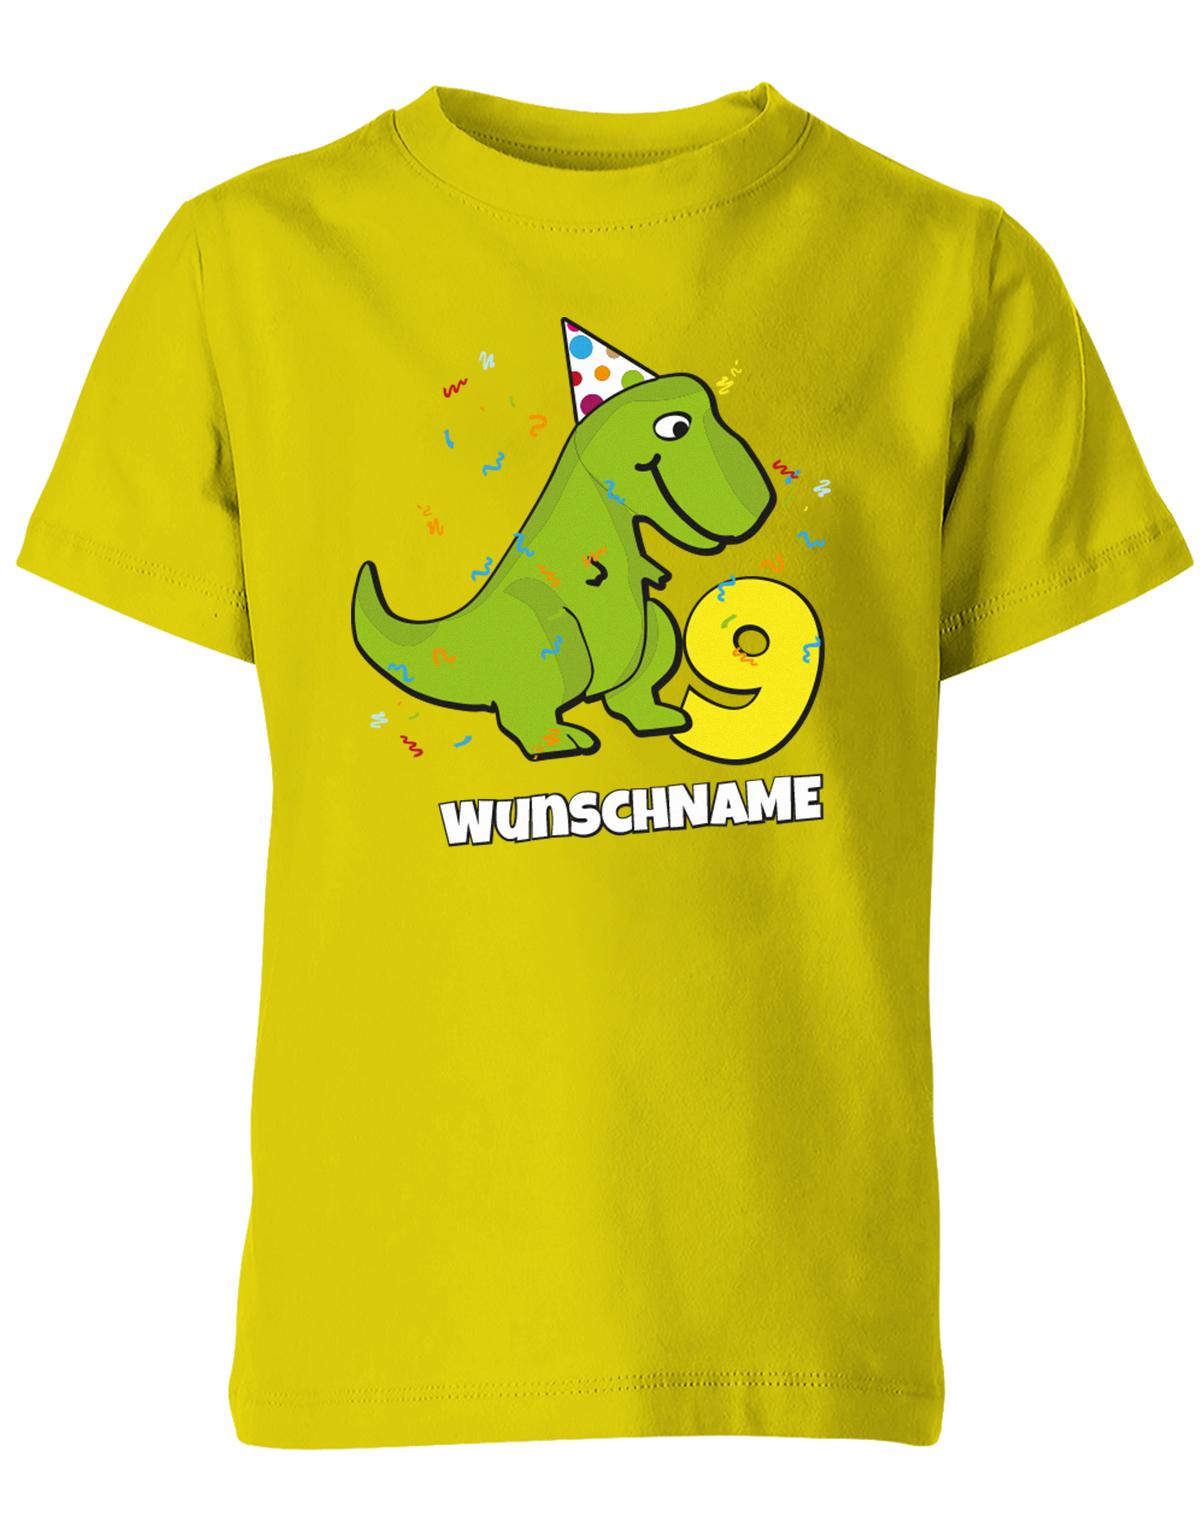 ich-bin-9-Dinosaurier-t-rex-wunschname-geburtstag-kinder-shirt-gelb